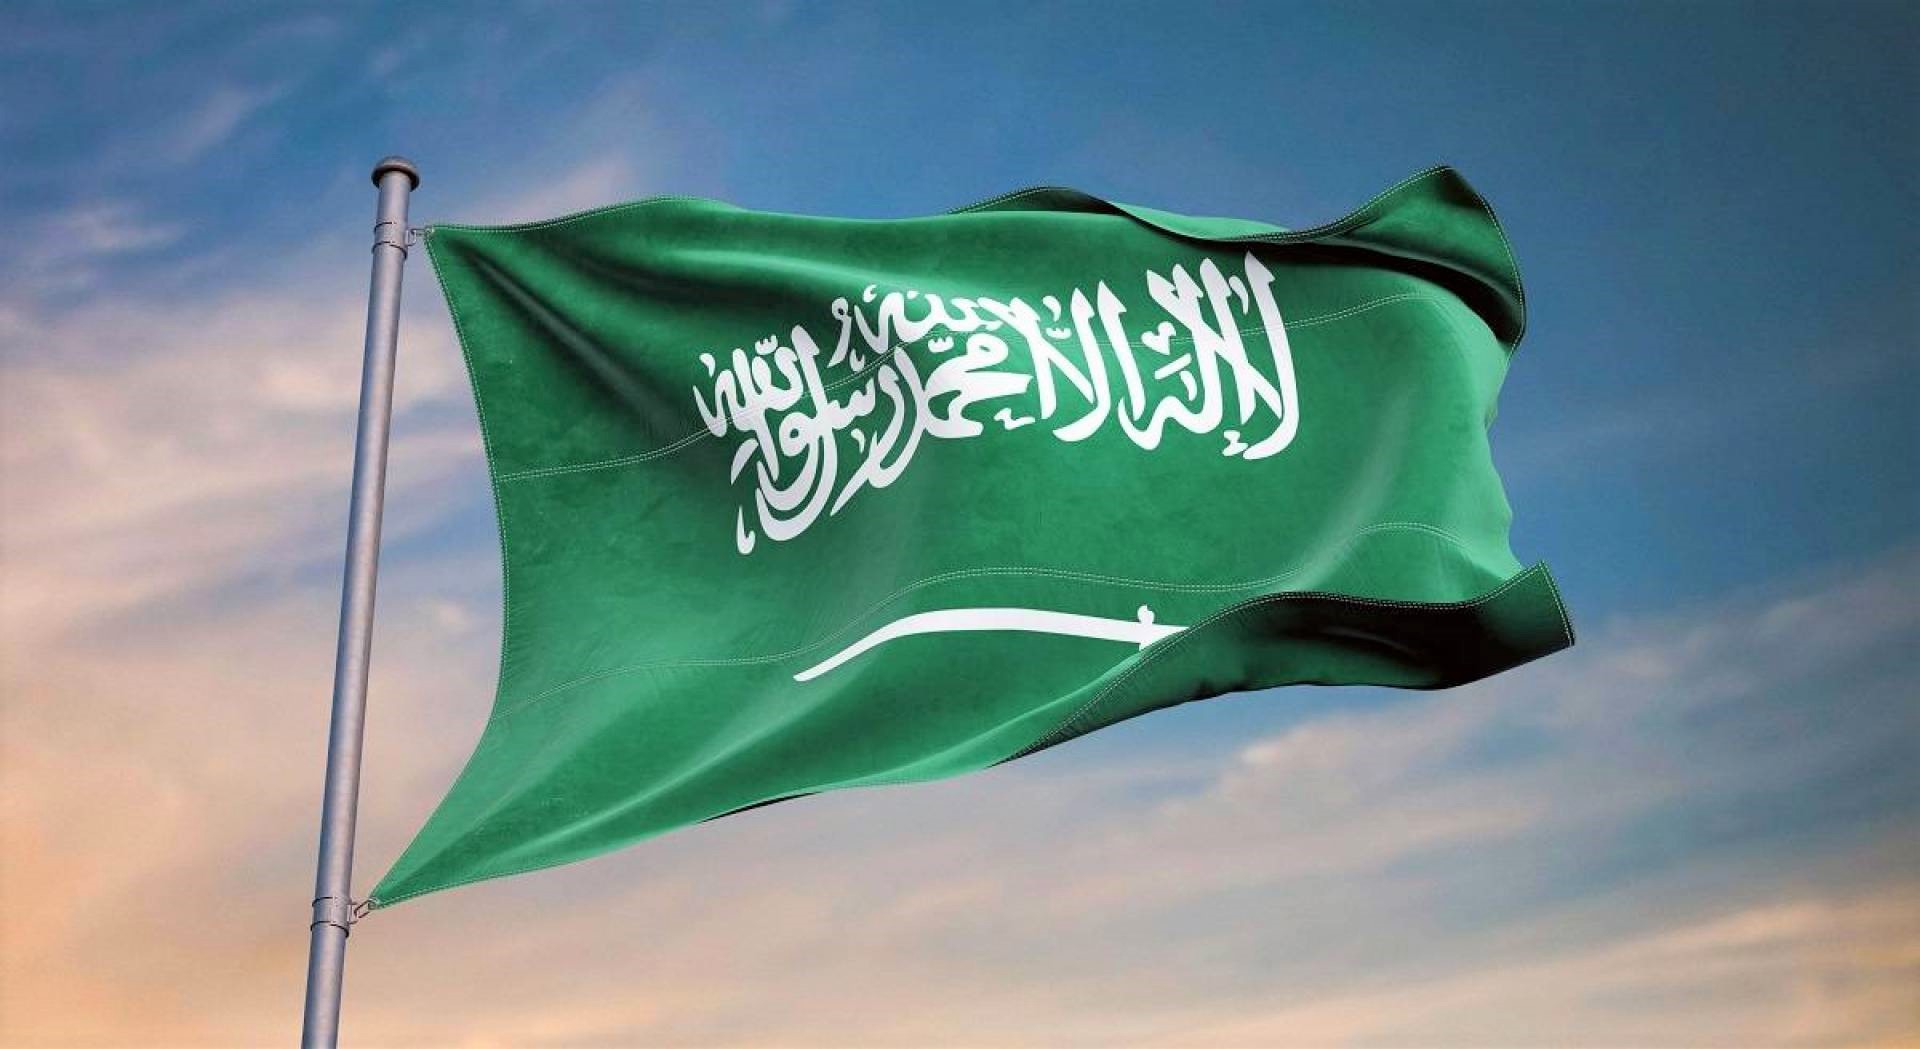 السعودية ترفض مسودة قرار أممي يطالب بتشجيع إرساء الديمقراطية وإجراء انتخابات دورية ونزيهة